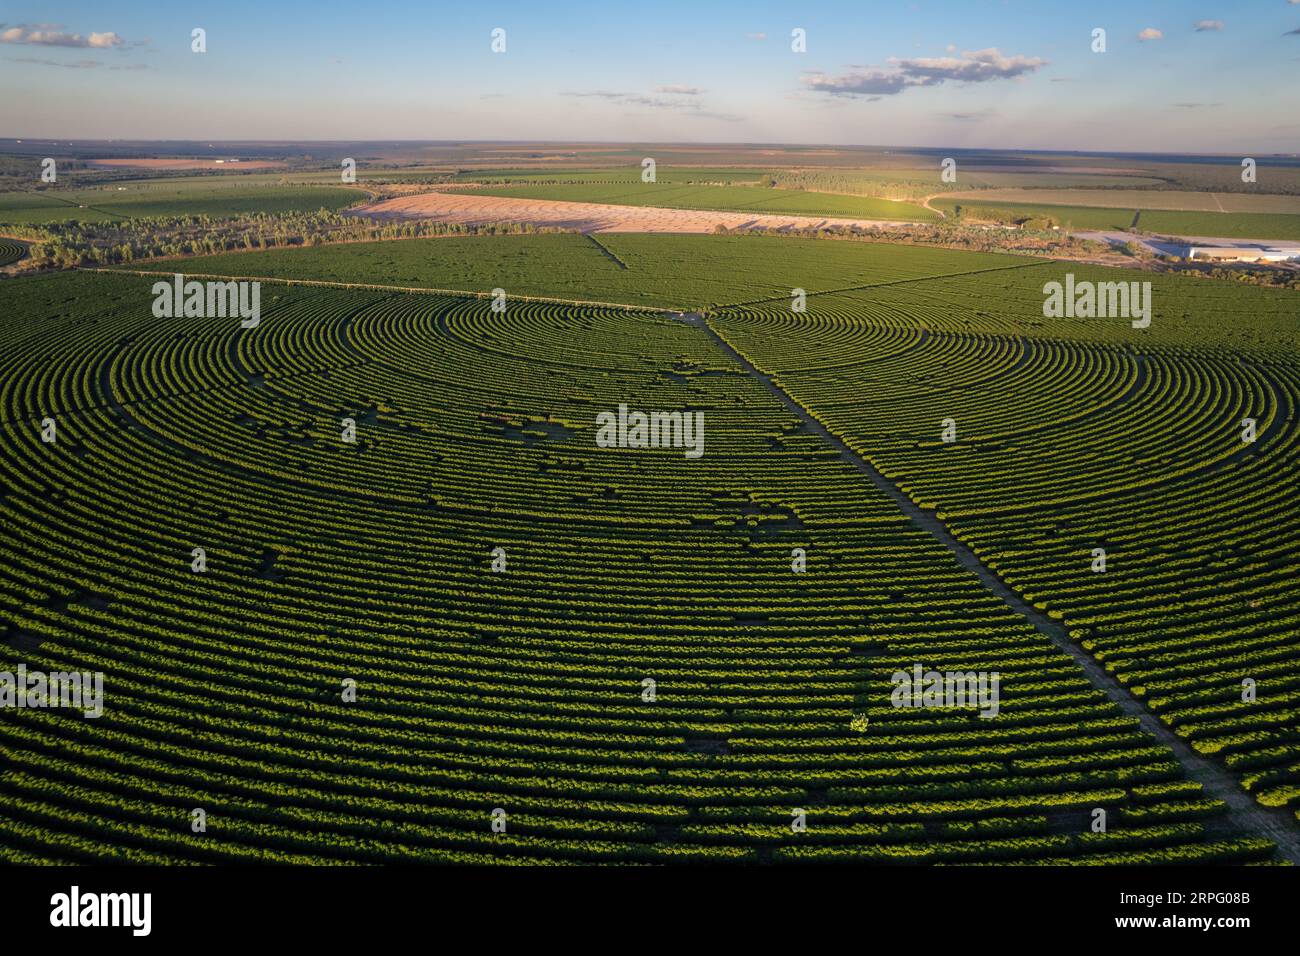 Luftaufnahme der riesigen Kaffeeplantage auf modernen landwirtschaftlichen Flächen an sonnigen Sommertagen in Cerrado von Brasilien. Konzept der Landwirtschaft, Ökologie, Umwelt Stockfoto